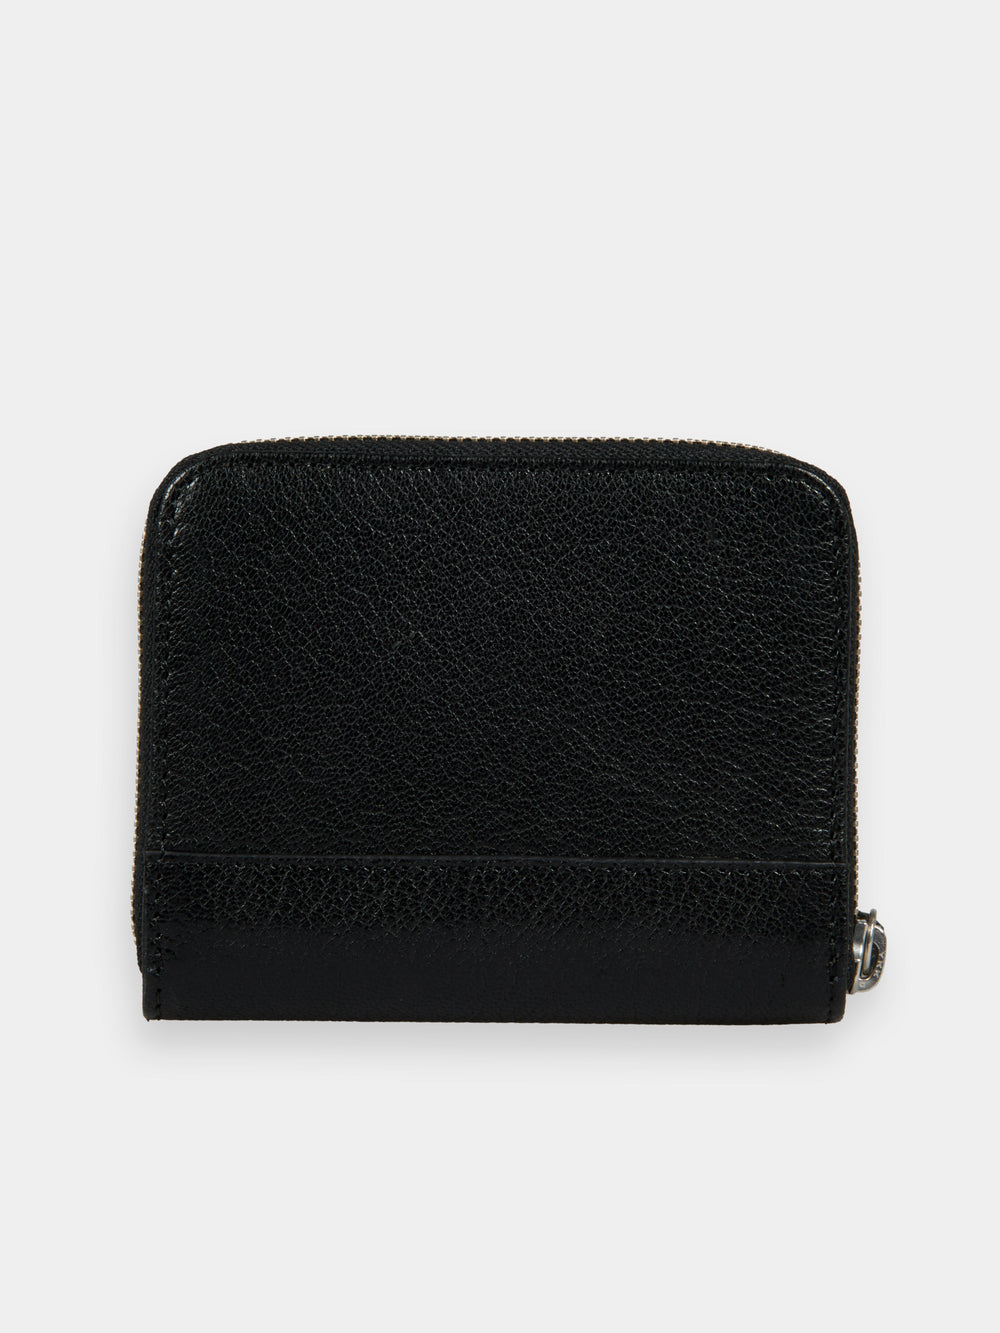 Mini leather wallet - Scotch & Soda NZ